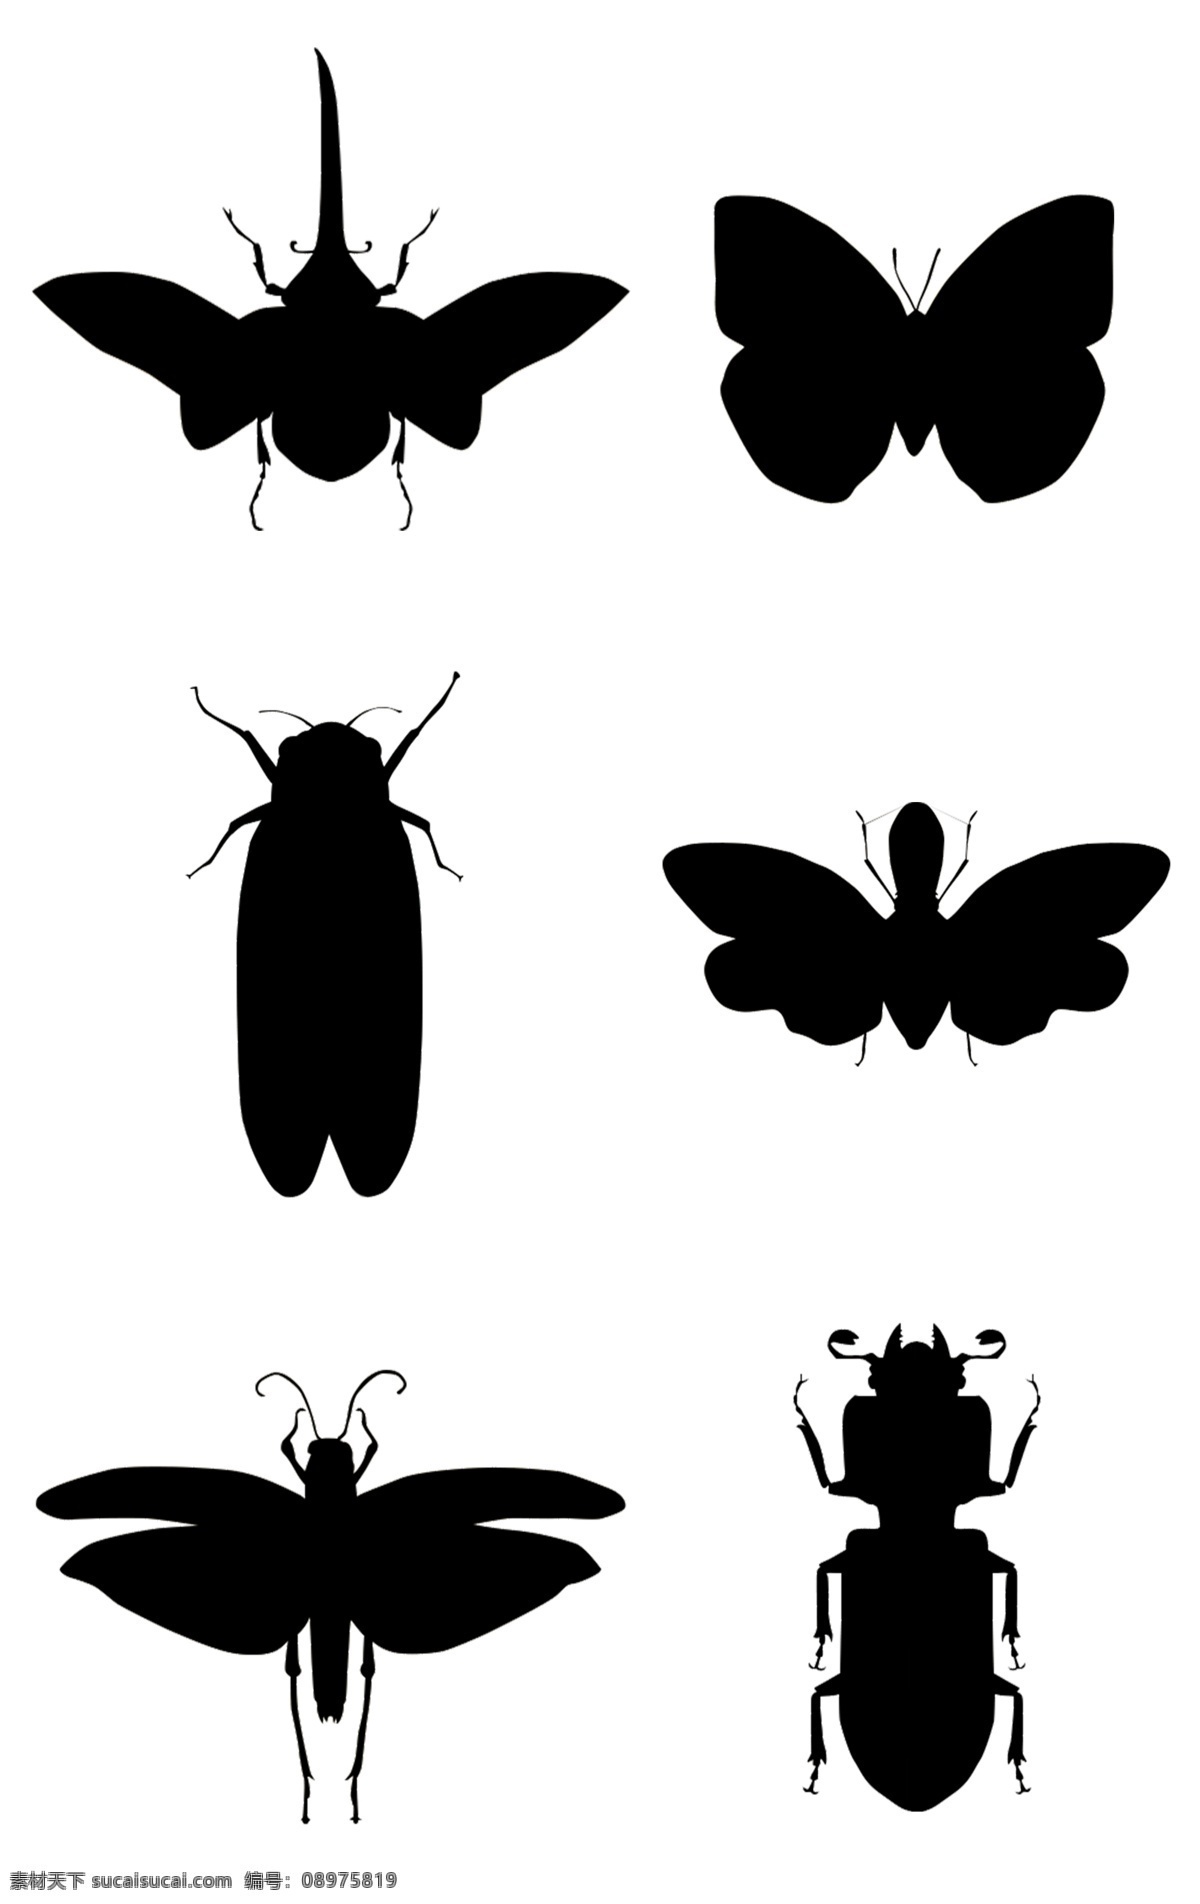 昆虫剪影素材 剪影 蝴蝶 昆虫 线条 翅膀 动物 飞行 美丽 魅力 纹身 图案 镂空